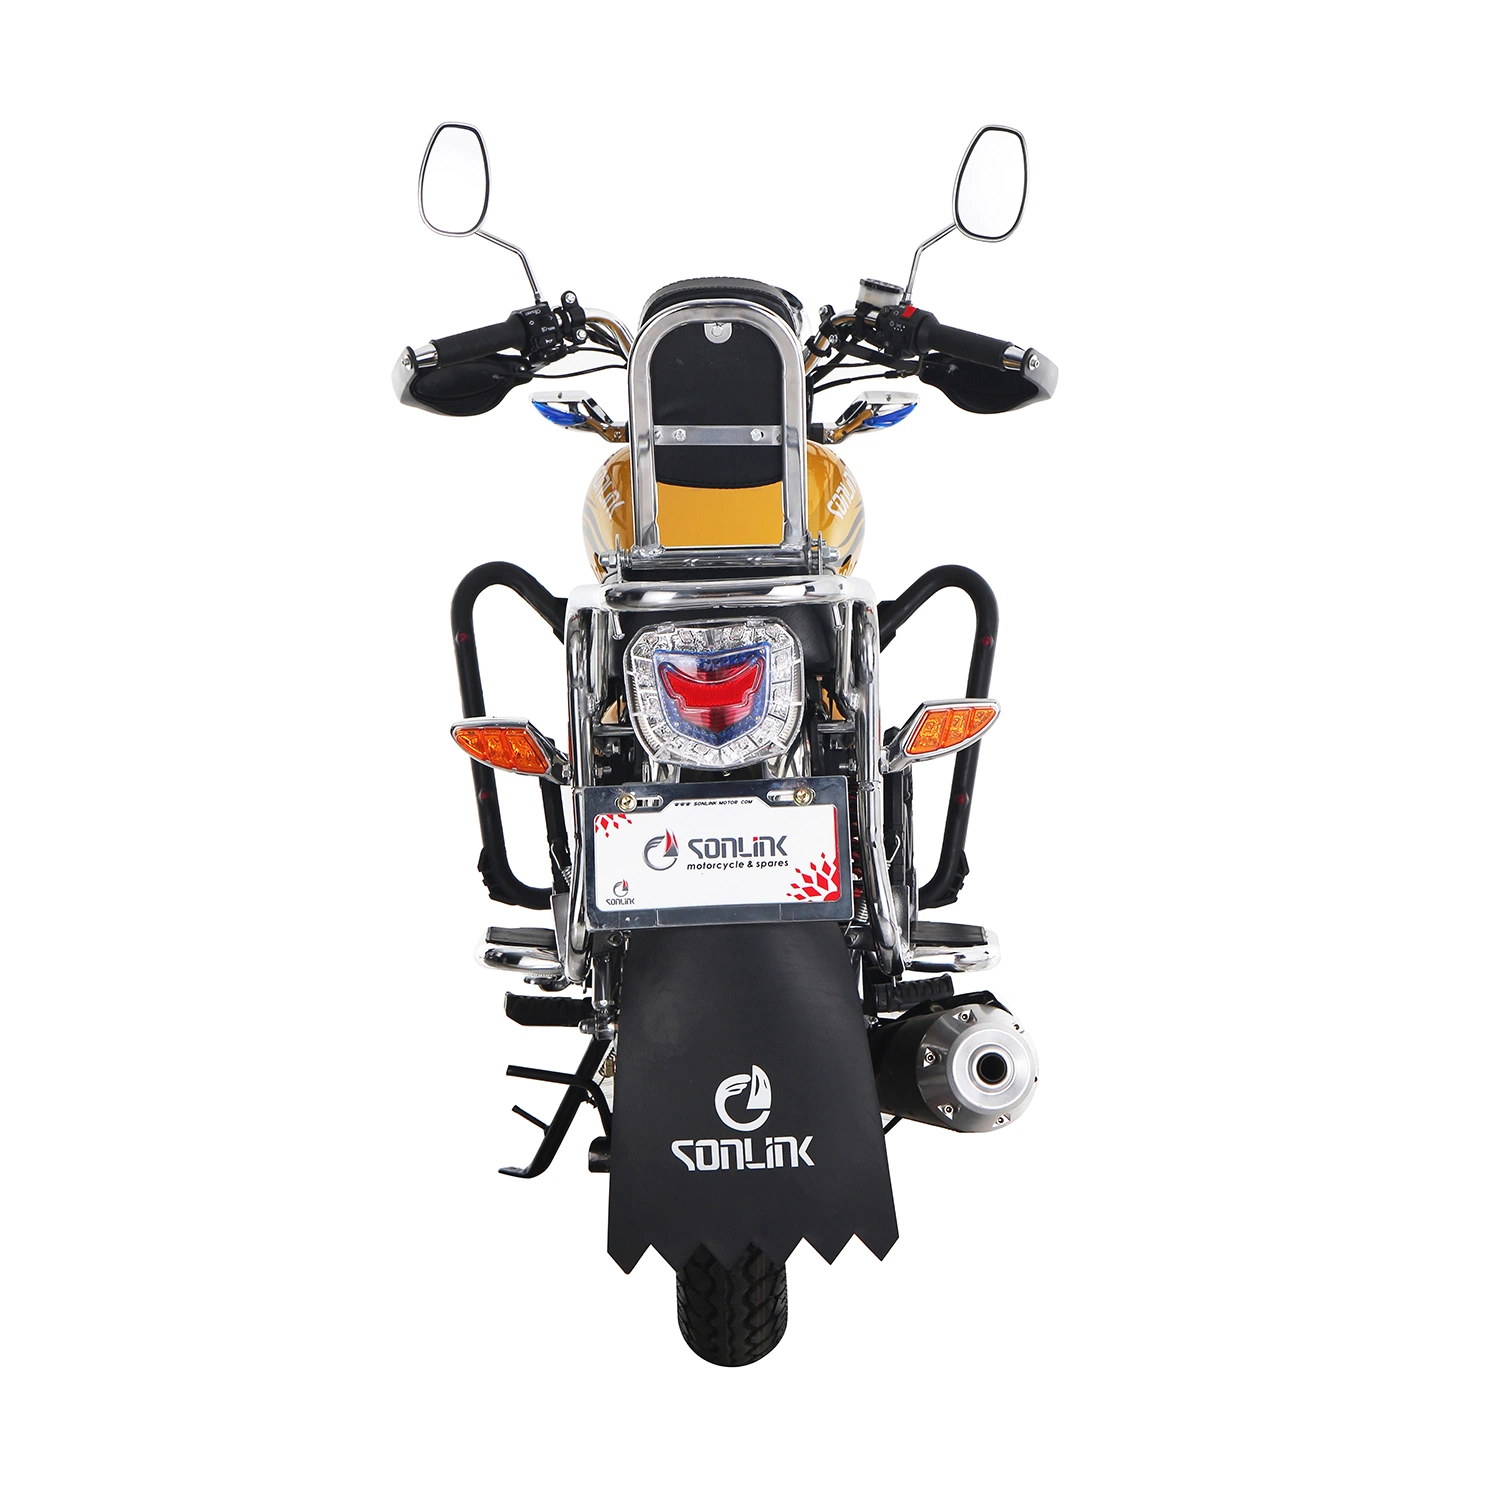 125cc/150cc motocicleta irán Gas /cg150 Modelo Cg Motocycles/ Haojue Precio moto